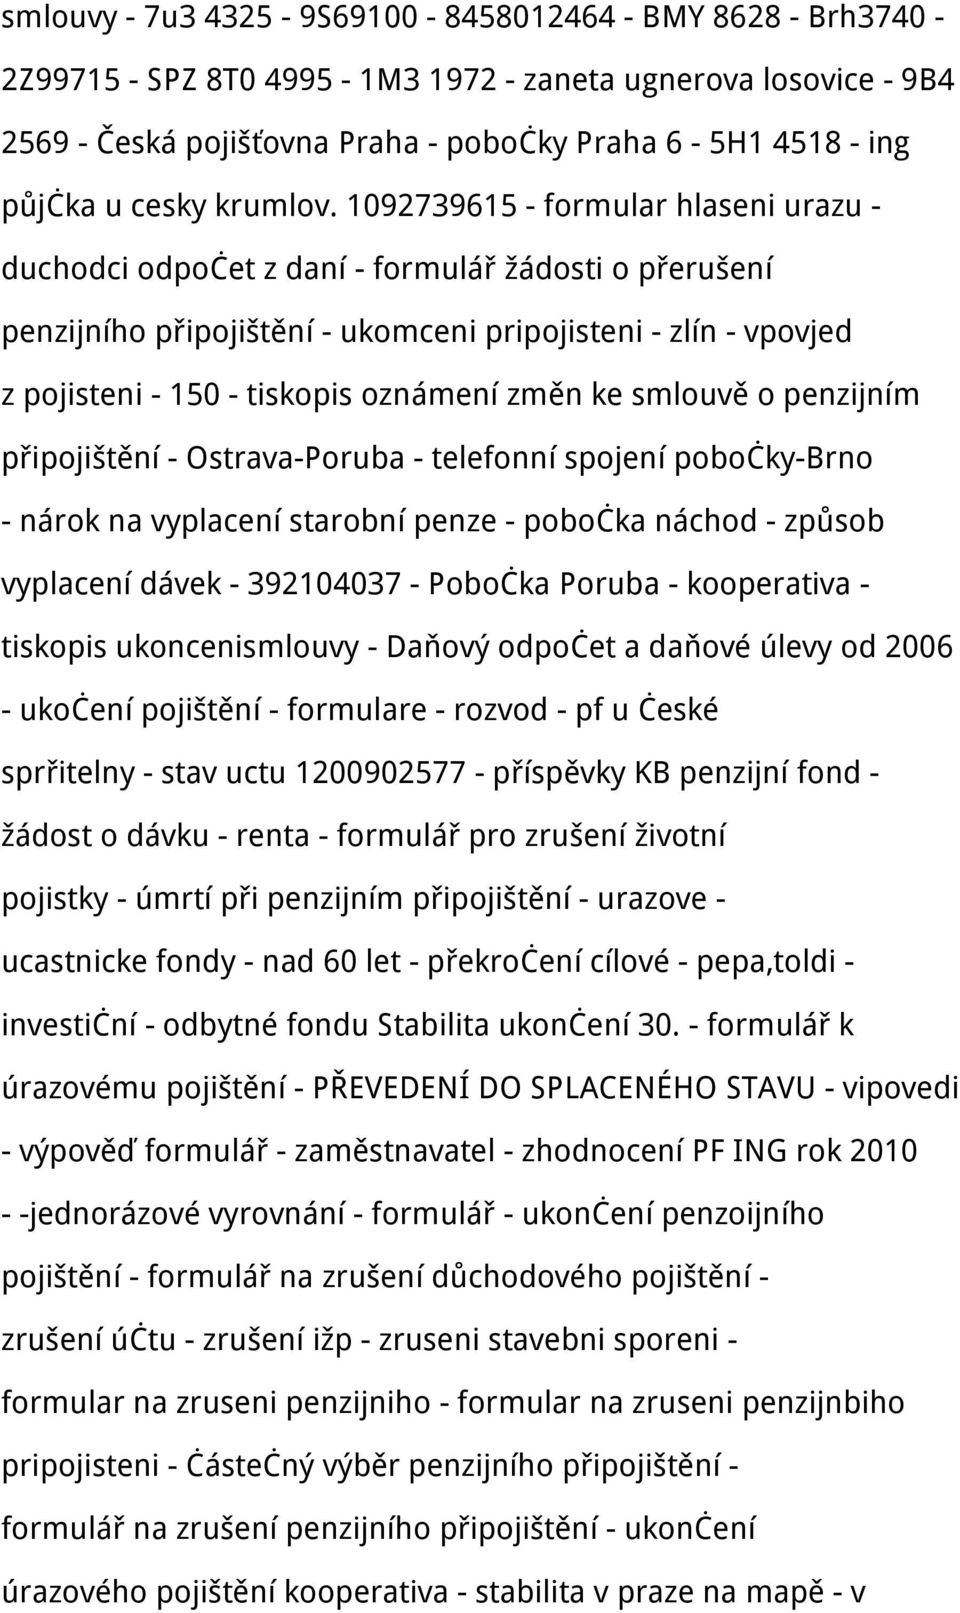 půjčka u cesky krumlov. udalosti - motocykly - Česká pojišťovna, Brno - 1BB  jeep - PDF Free Download